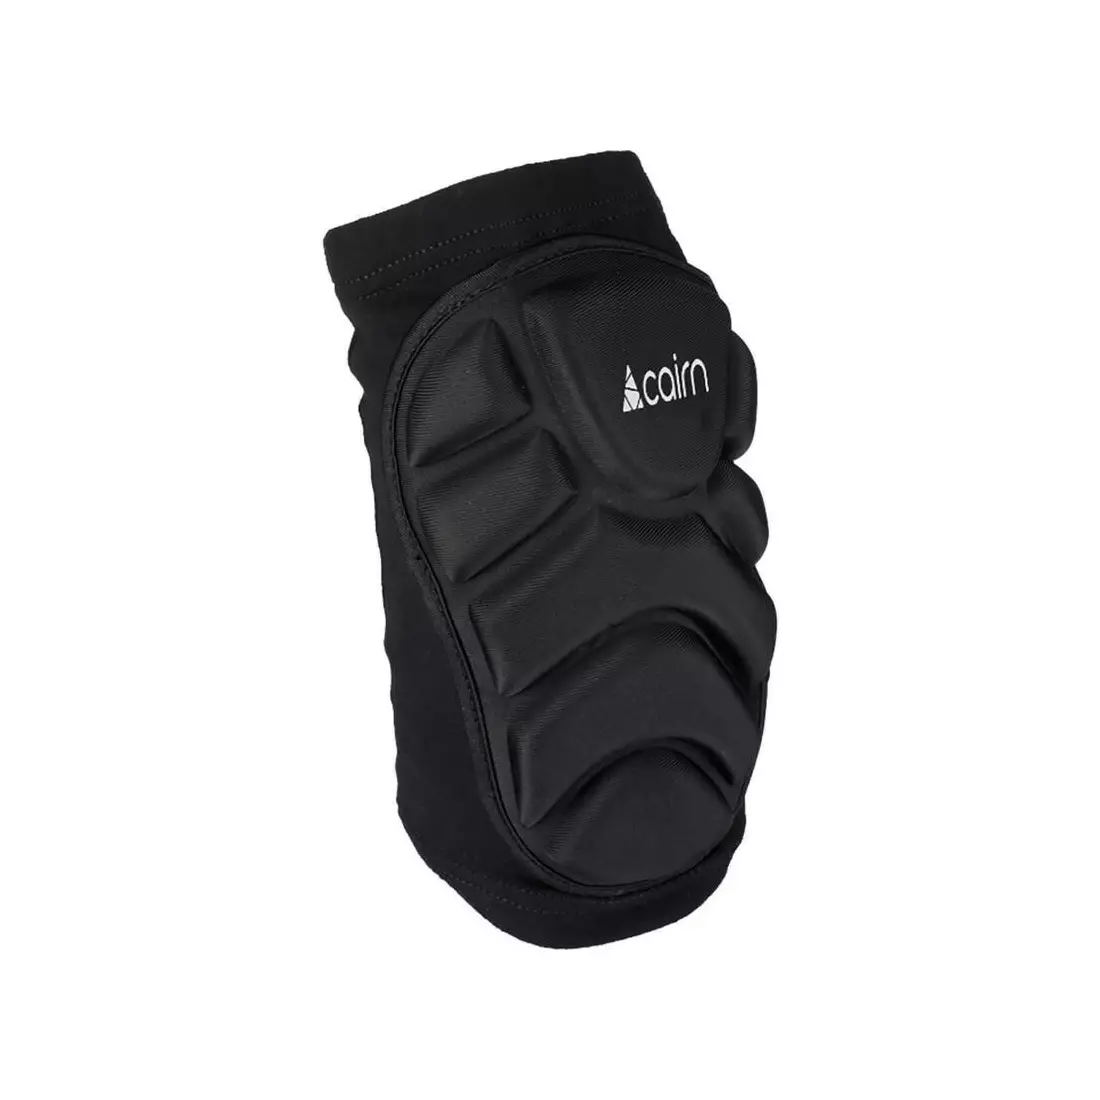 CAIRN PROTYL Lyžařské / snowboardové chrániče kolen, černé